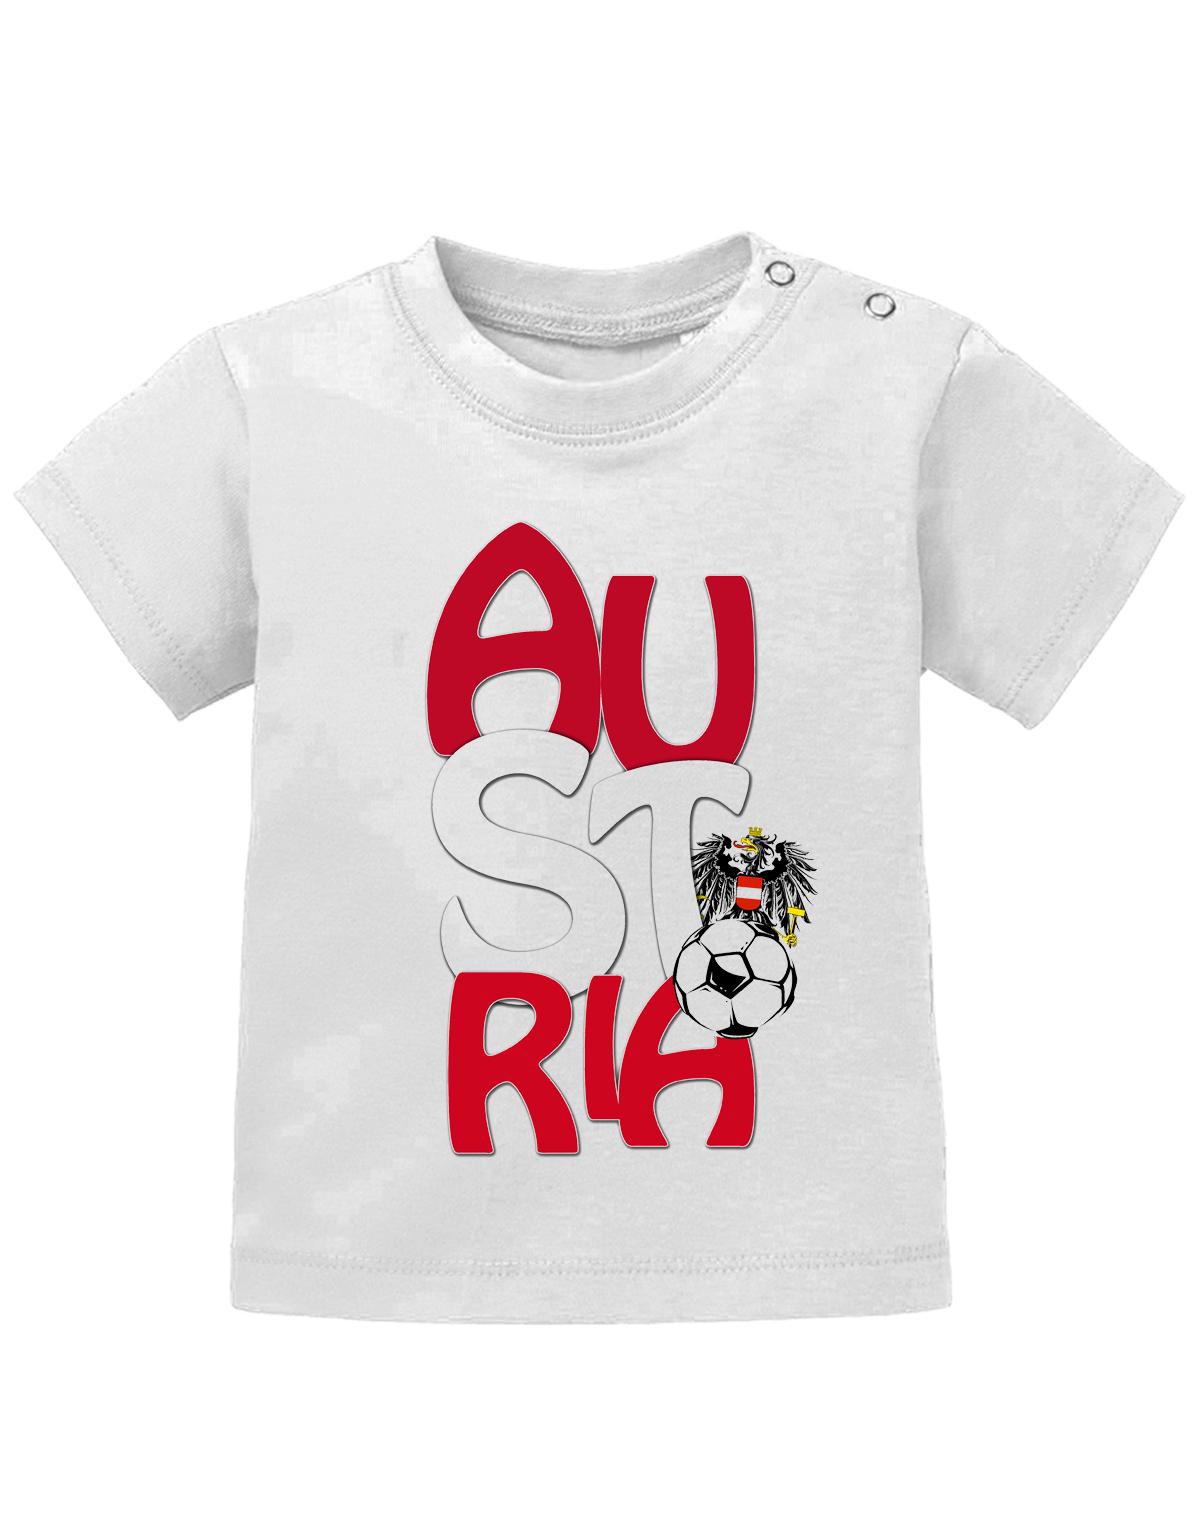 Österreich T Shirt für Junge und Mädchen. Austria Block Schriftzug mit Österreich Adler und Fußball.